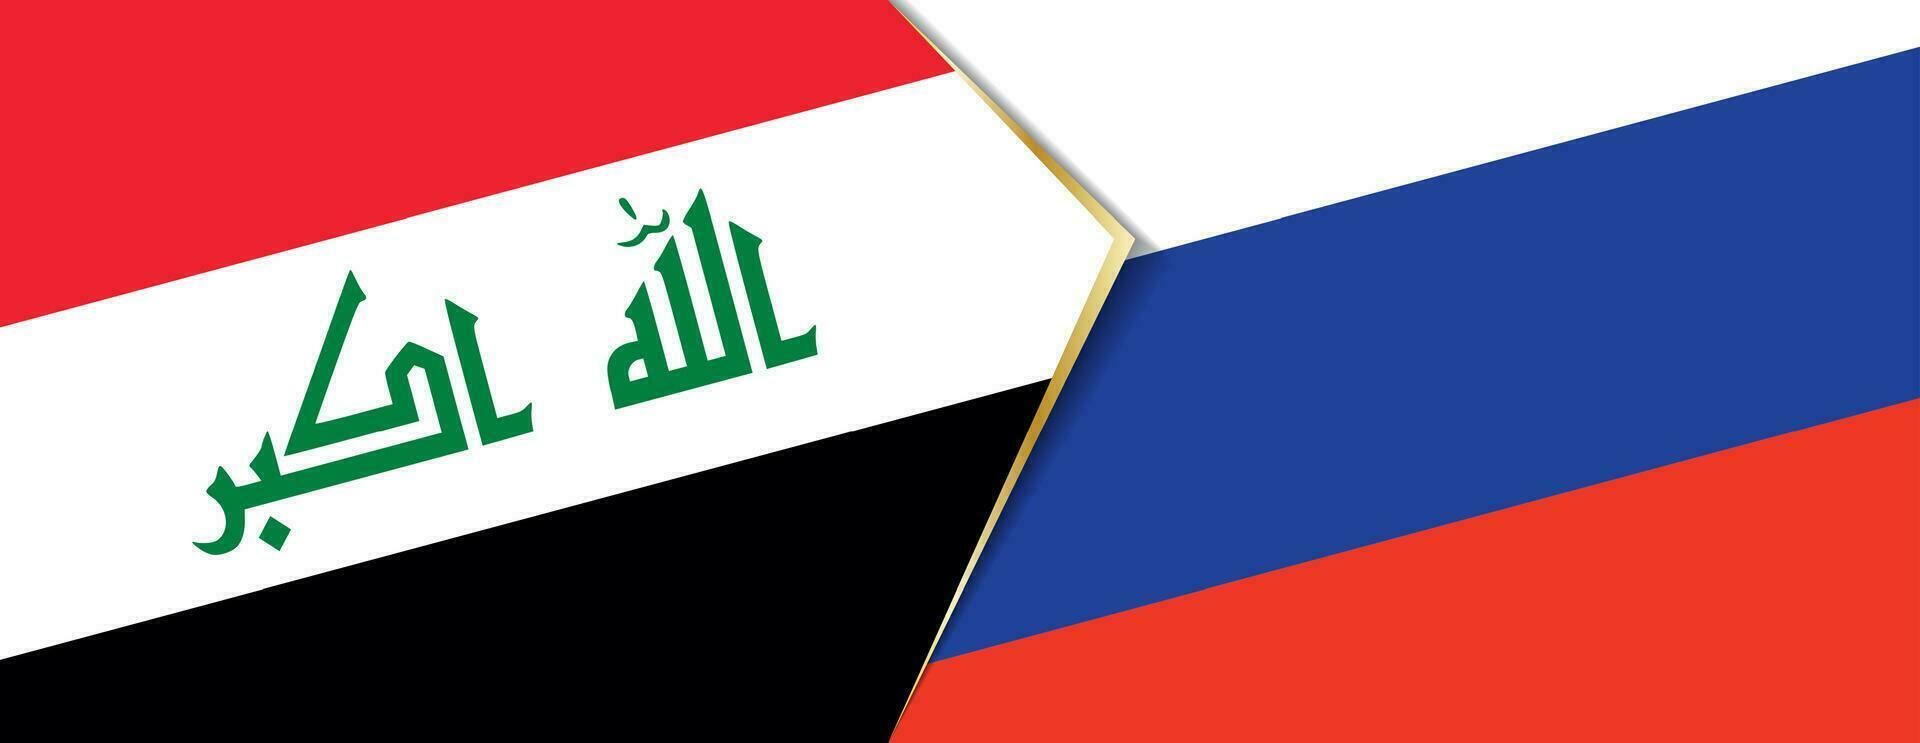 Irak y Rusia banderas, dos vector banderas